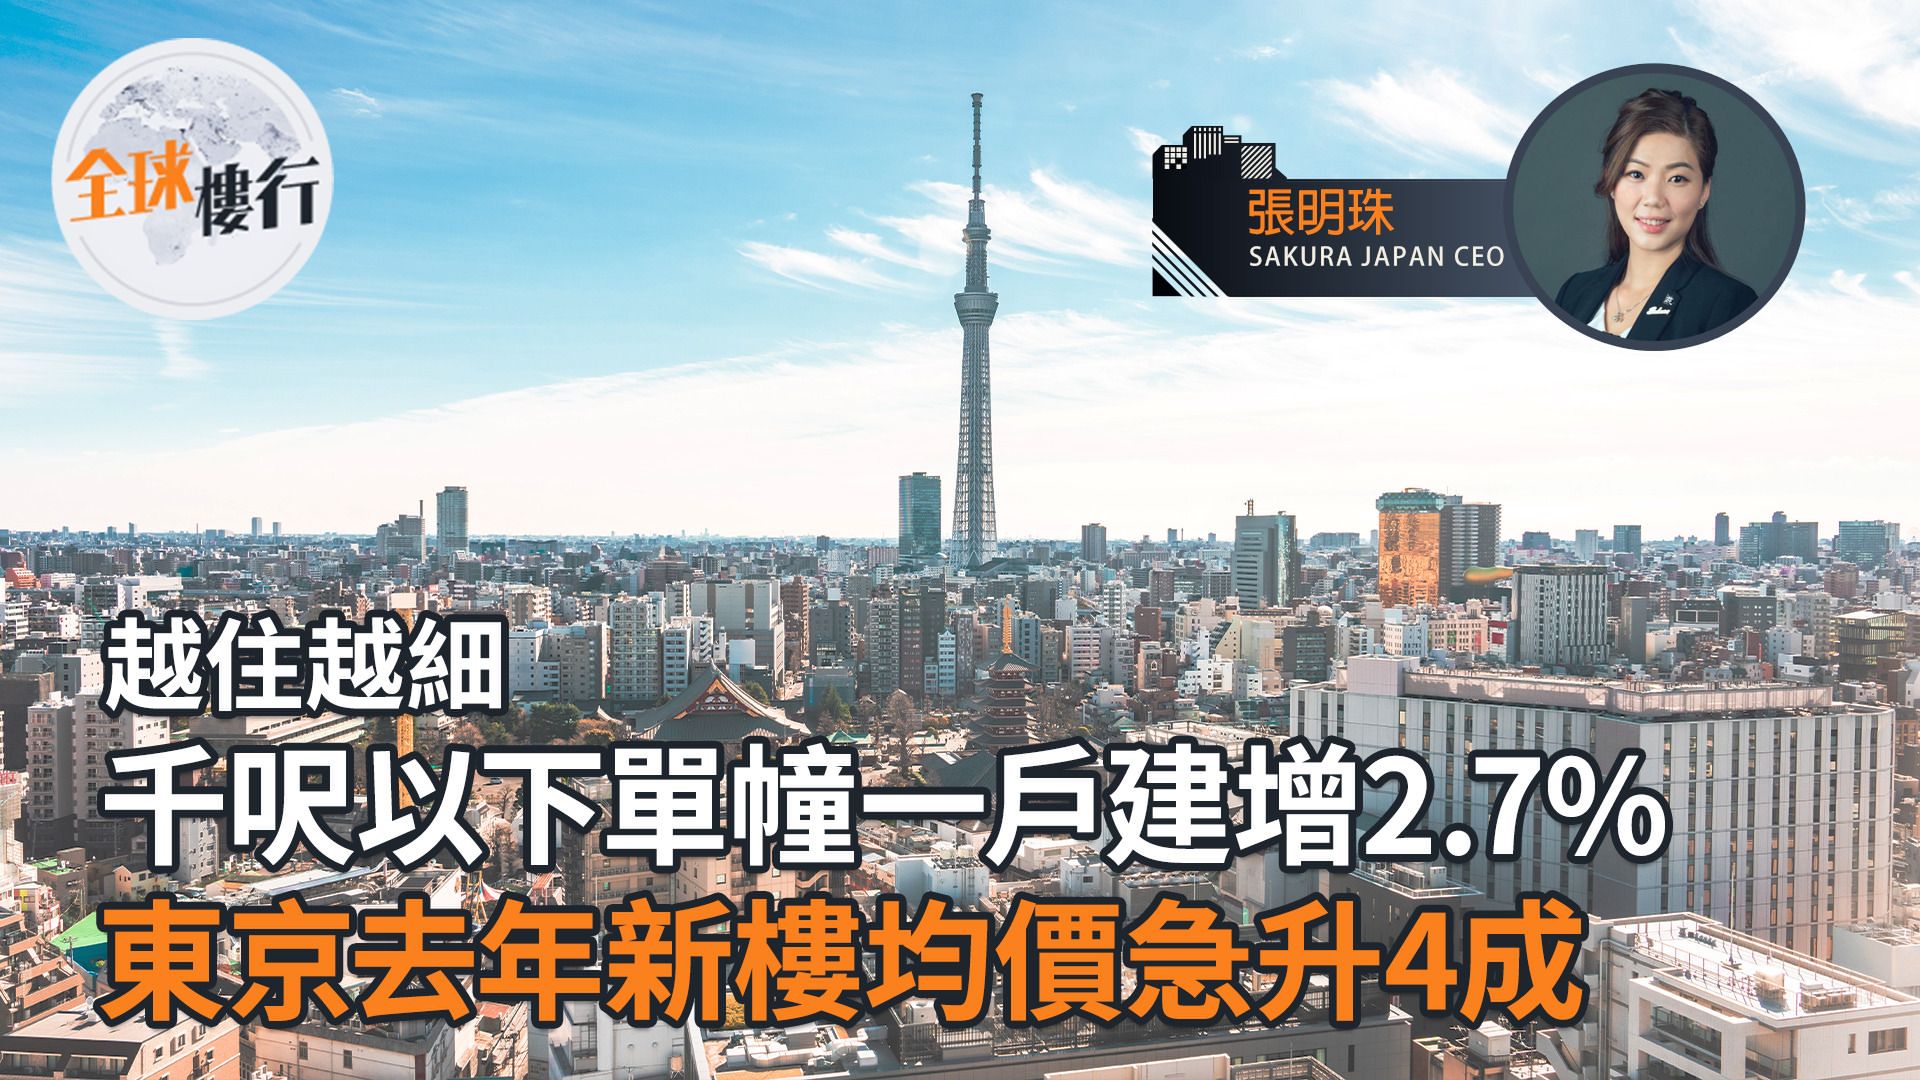 東京去年新樓均價急升4成 越住越細 千呎以下單幢一戶建增2.7%